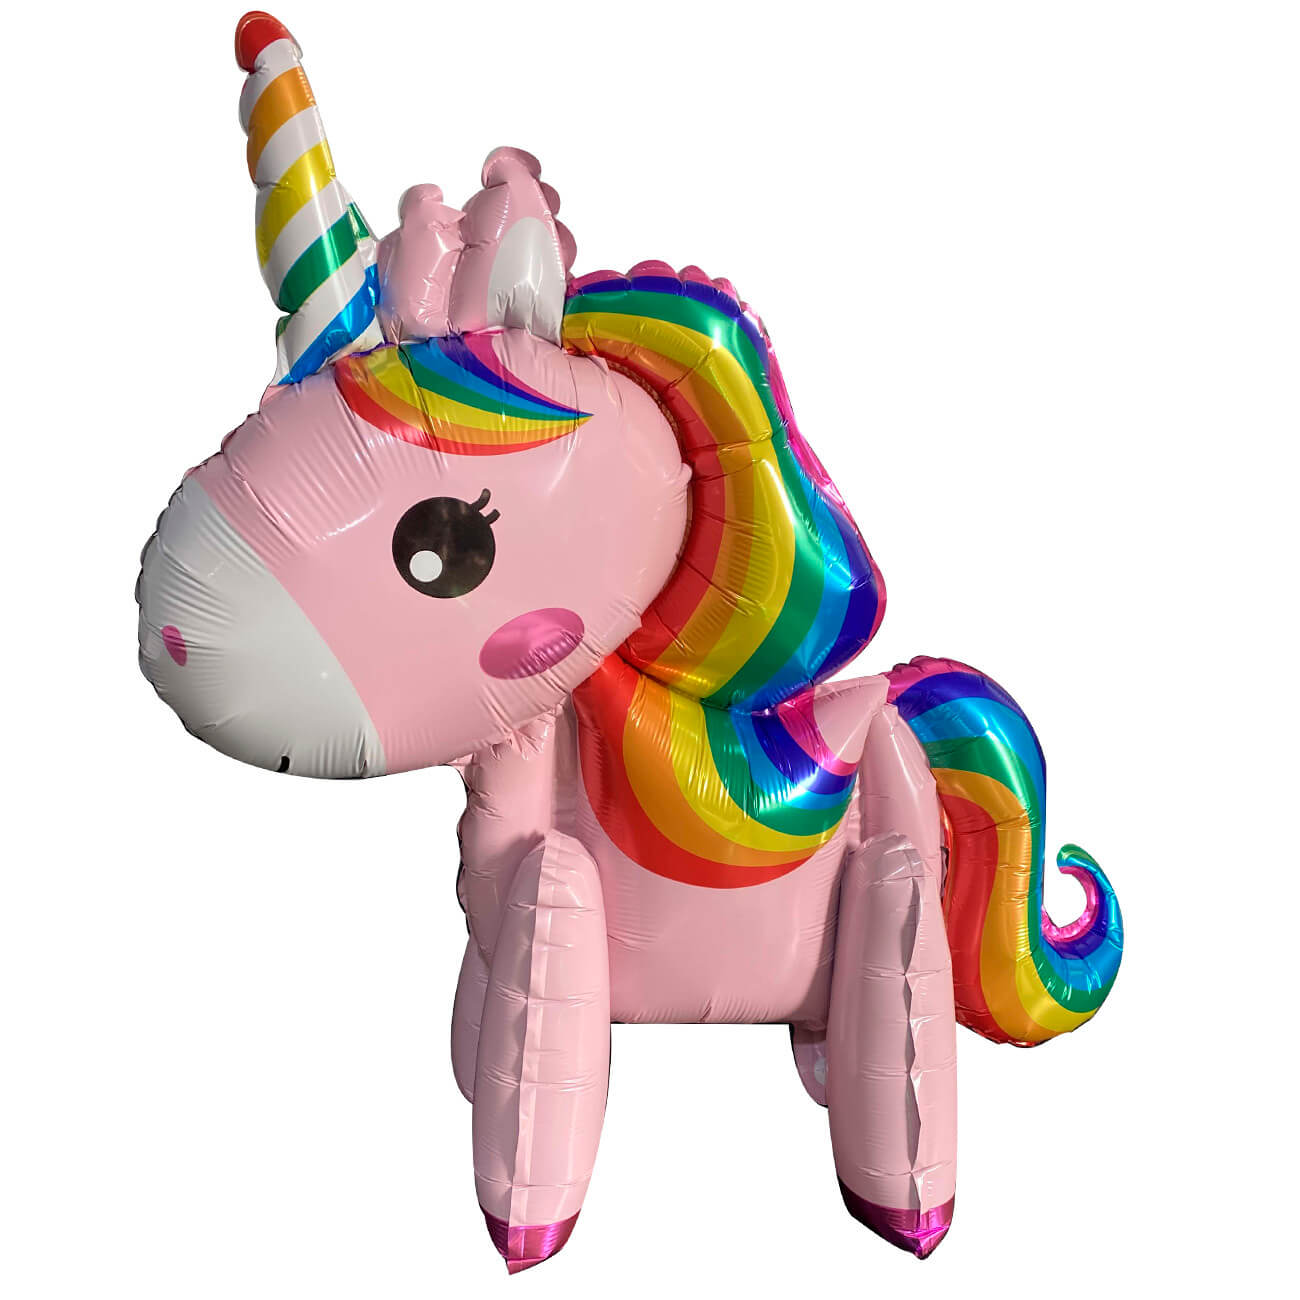 Шар воздушный, 58х50 см, фольга, розовый, Единорог, Unicorn шар воздушный 58х50 см фольга розовый единорог unicorn